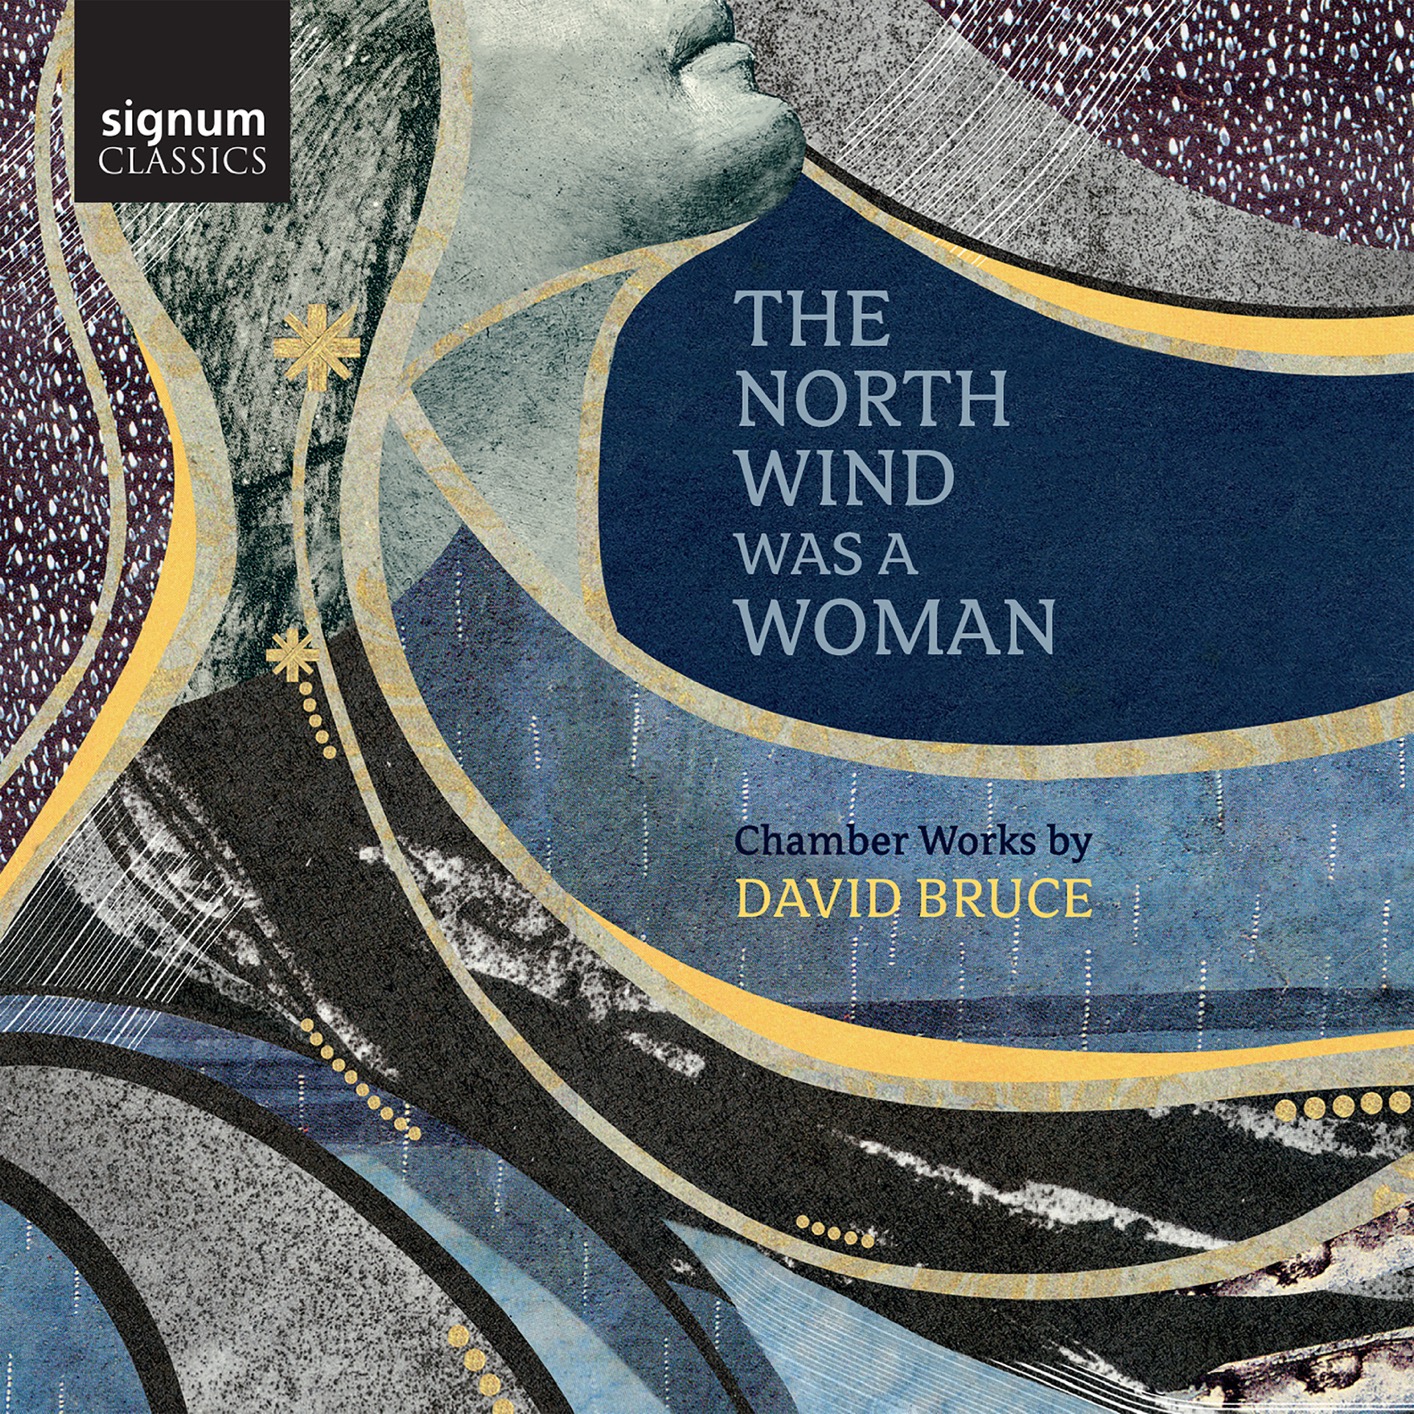 VA - David Bruce: The North Wind Was a Woman (2019) [FLAC 24bit/96kHz]